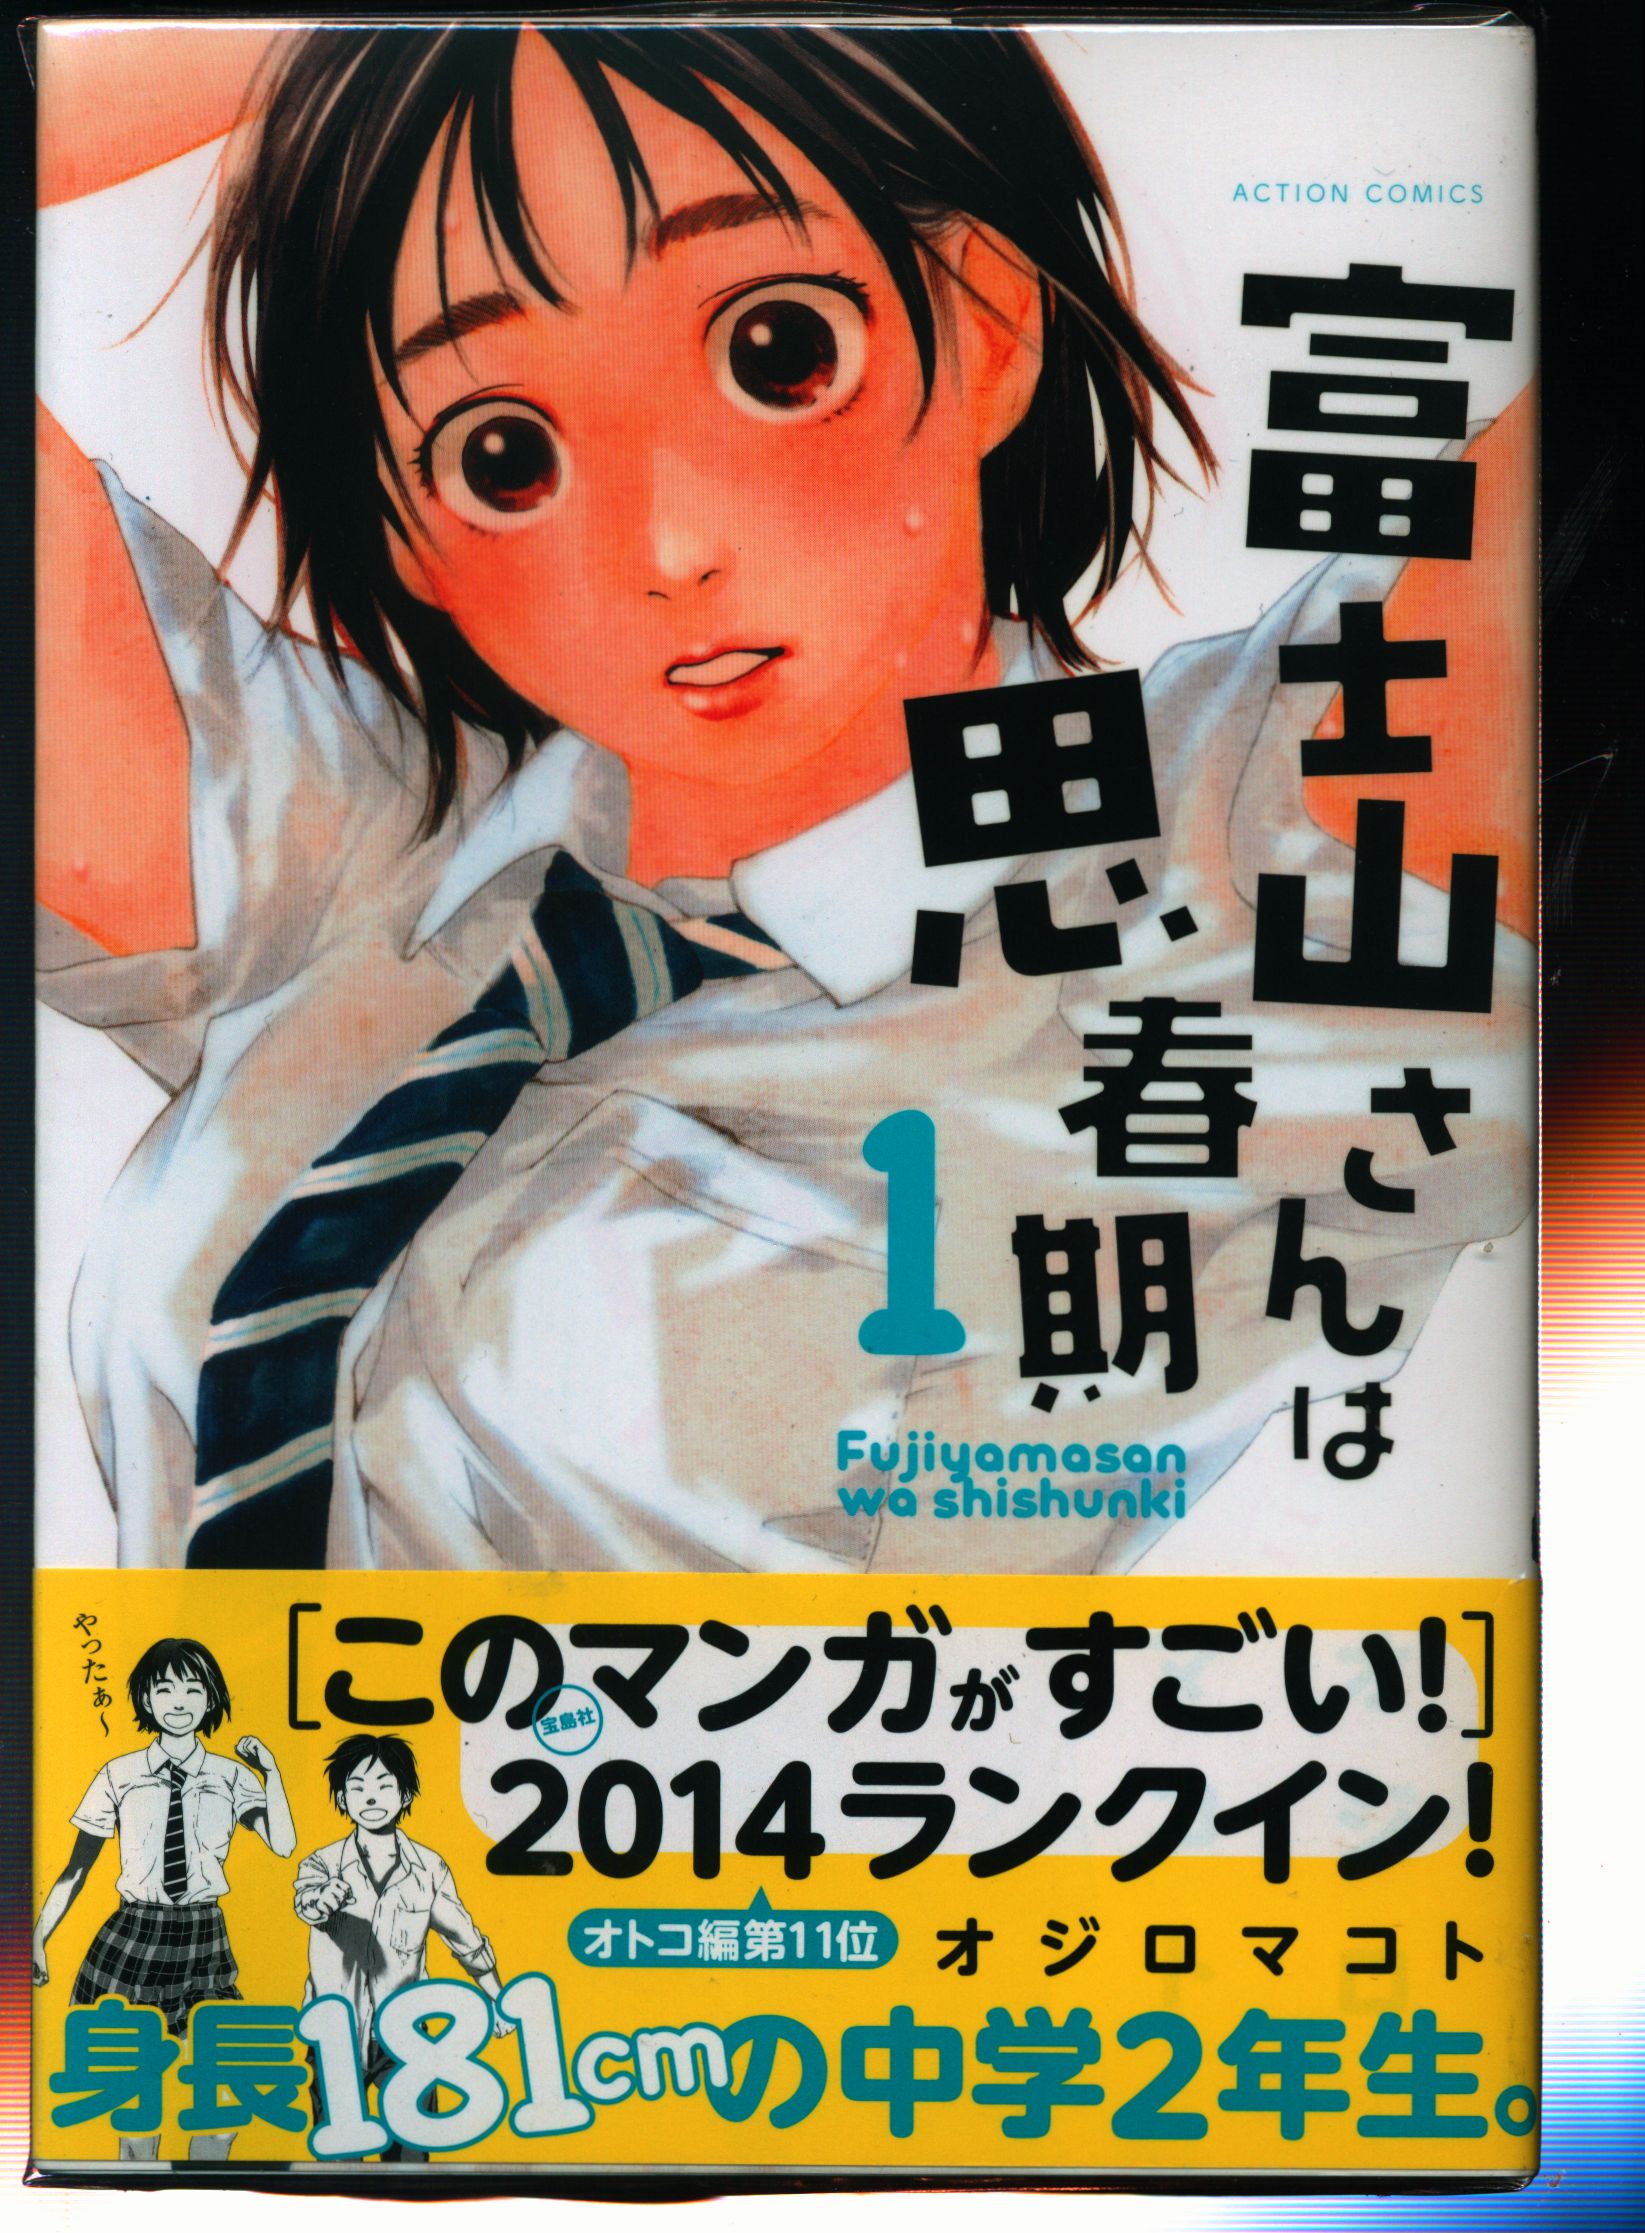 双葉社 アクションコミックス オジロマコト 富士山さんは思春期 全8巻 セット まんだらけ Mandarake